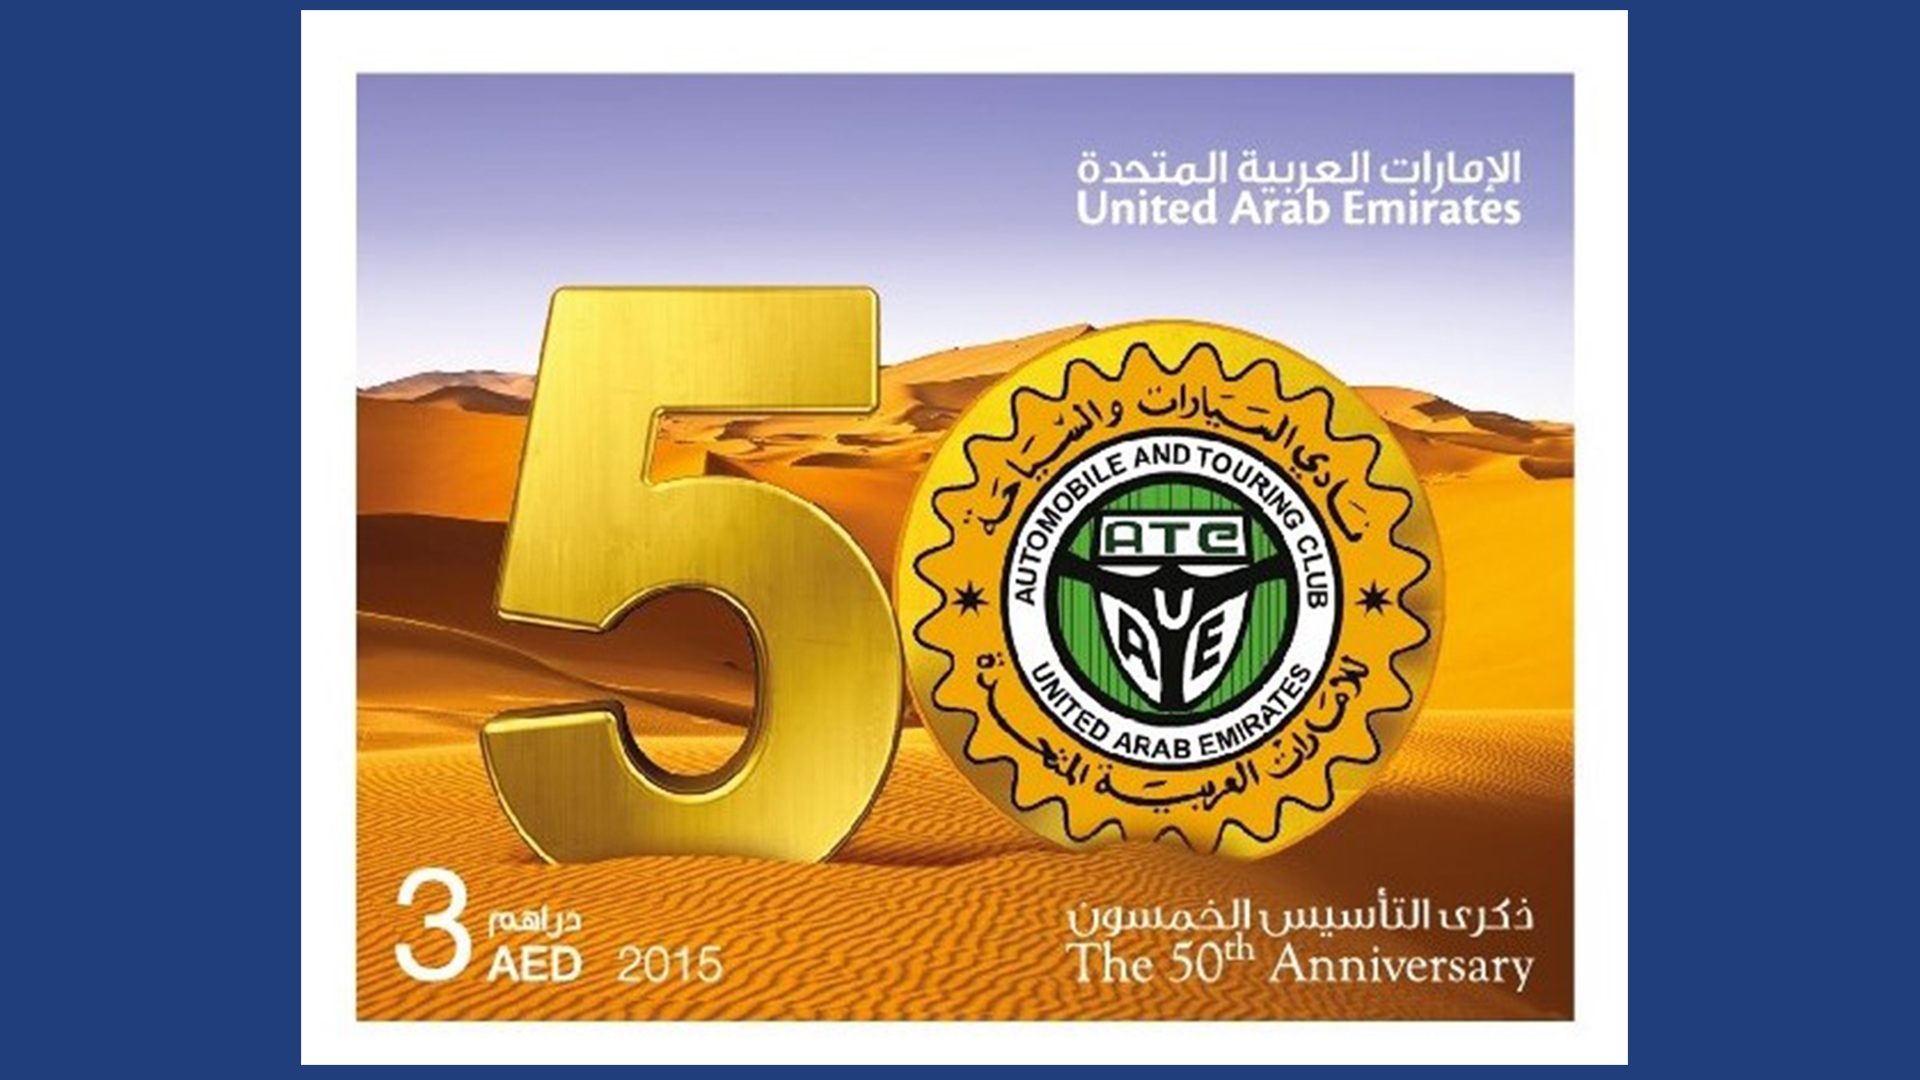 50th anniversary logo uae